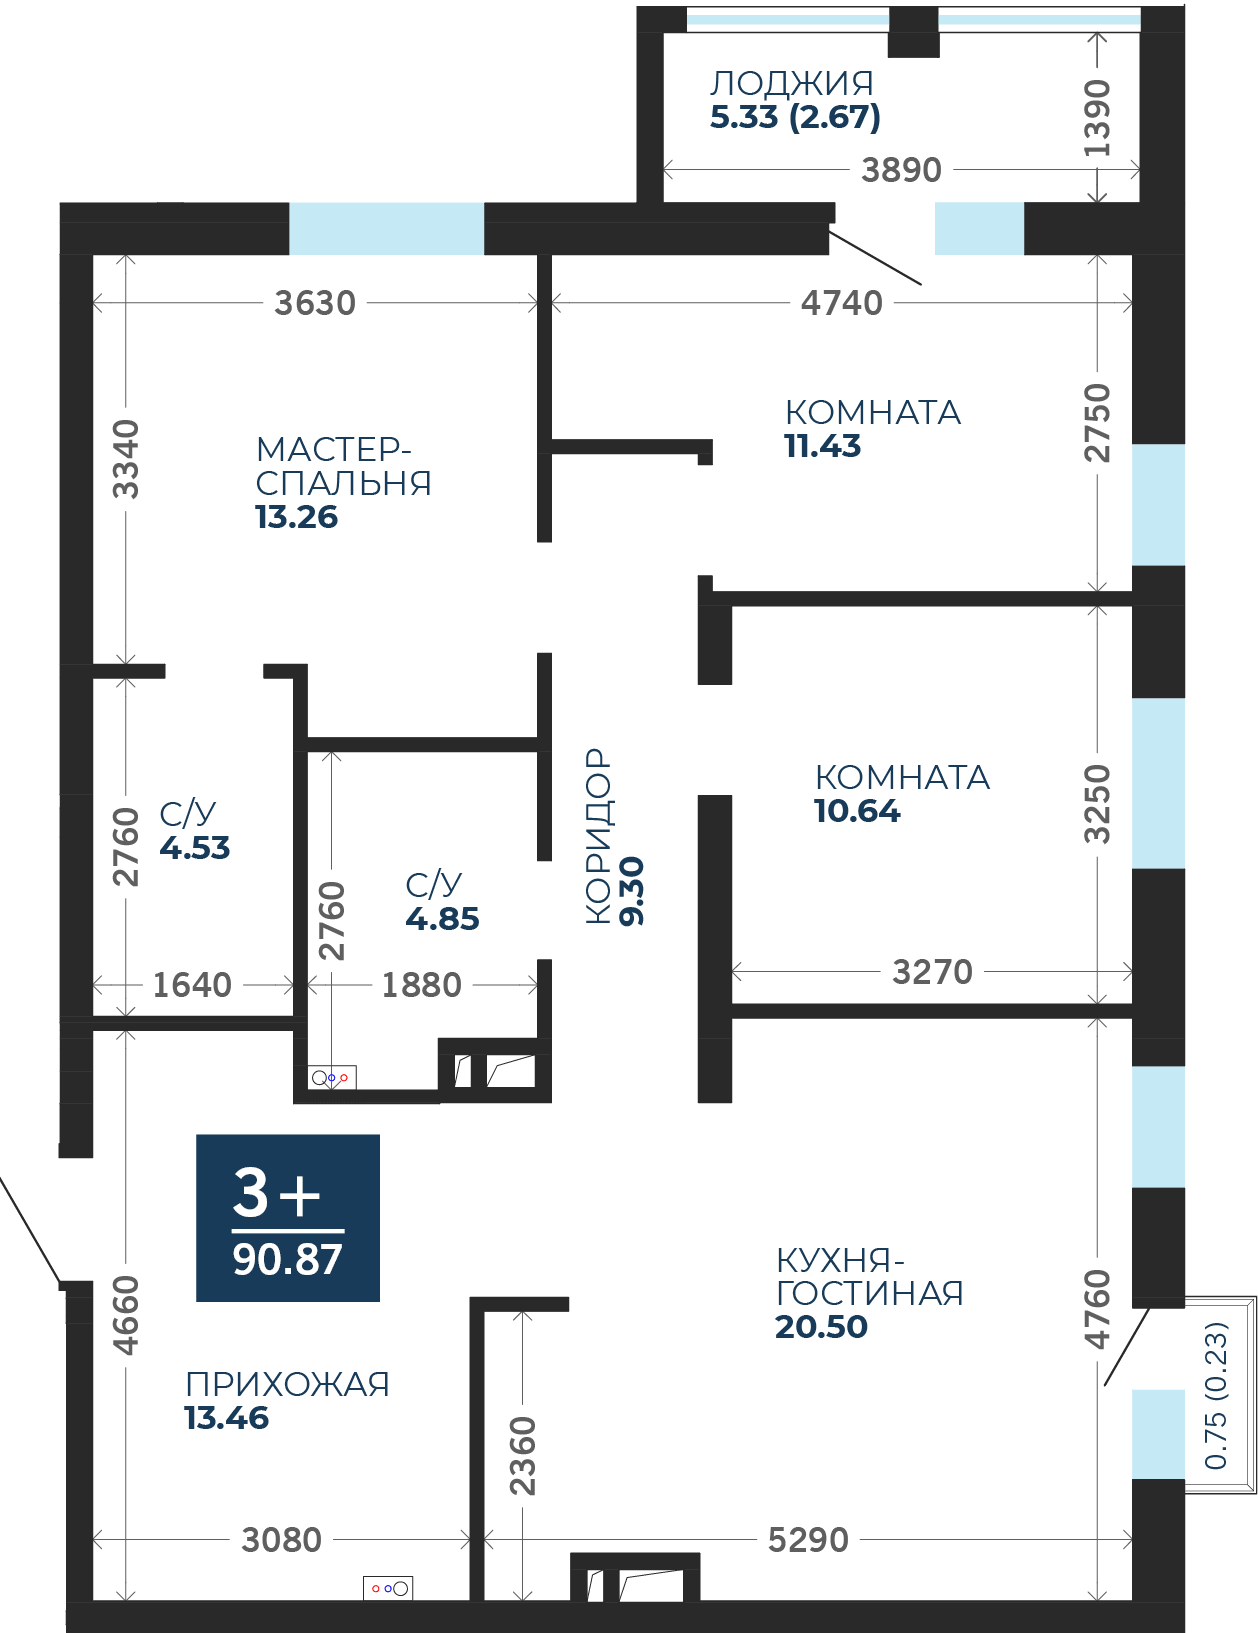 Квартира № 28, 3-комнатная, 90.87 кв. м, 5 этаж